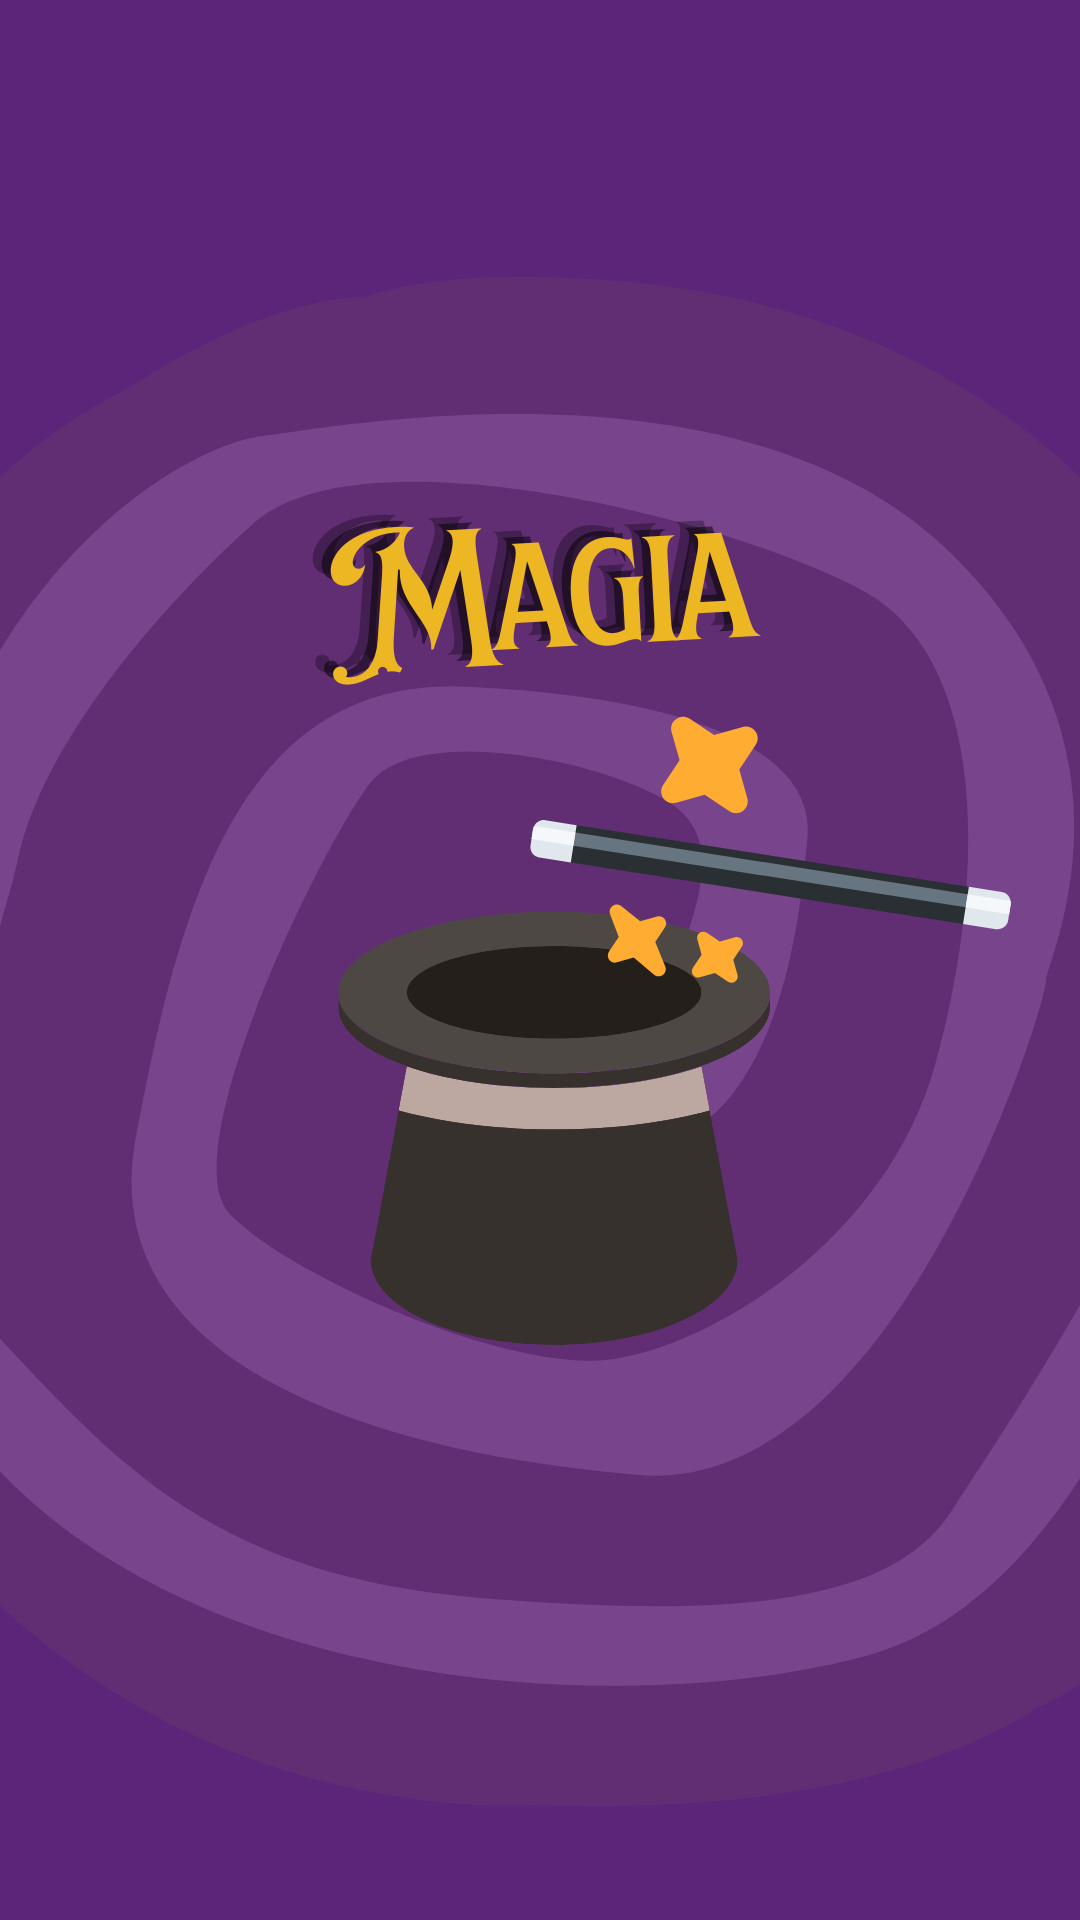 Show de animación a la lectura “La magia de la lectura” con el Mago Roque